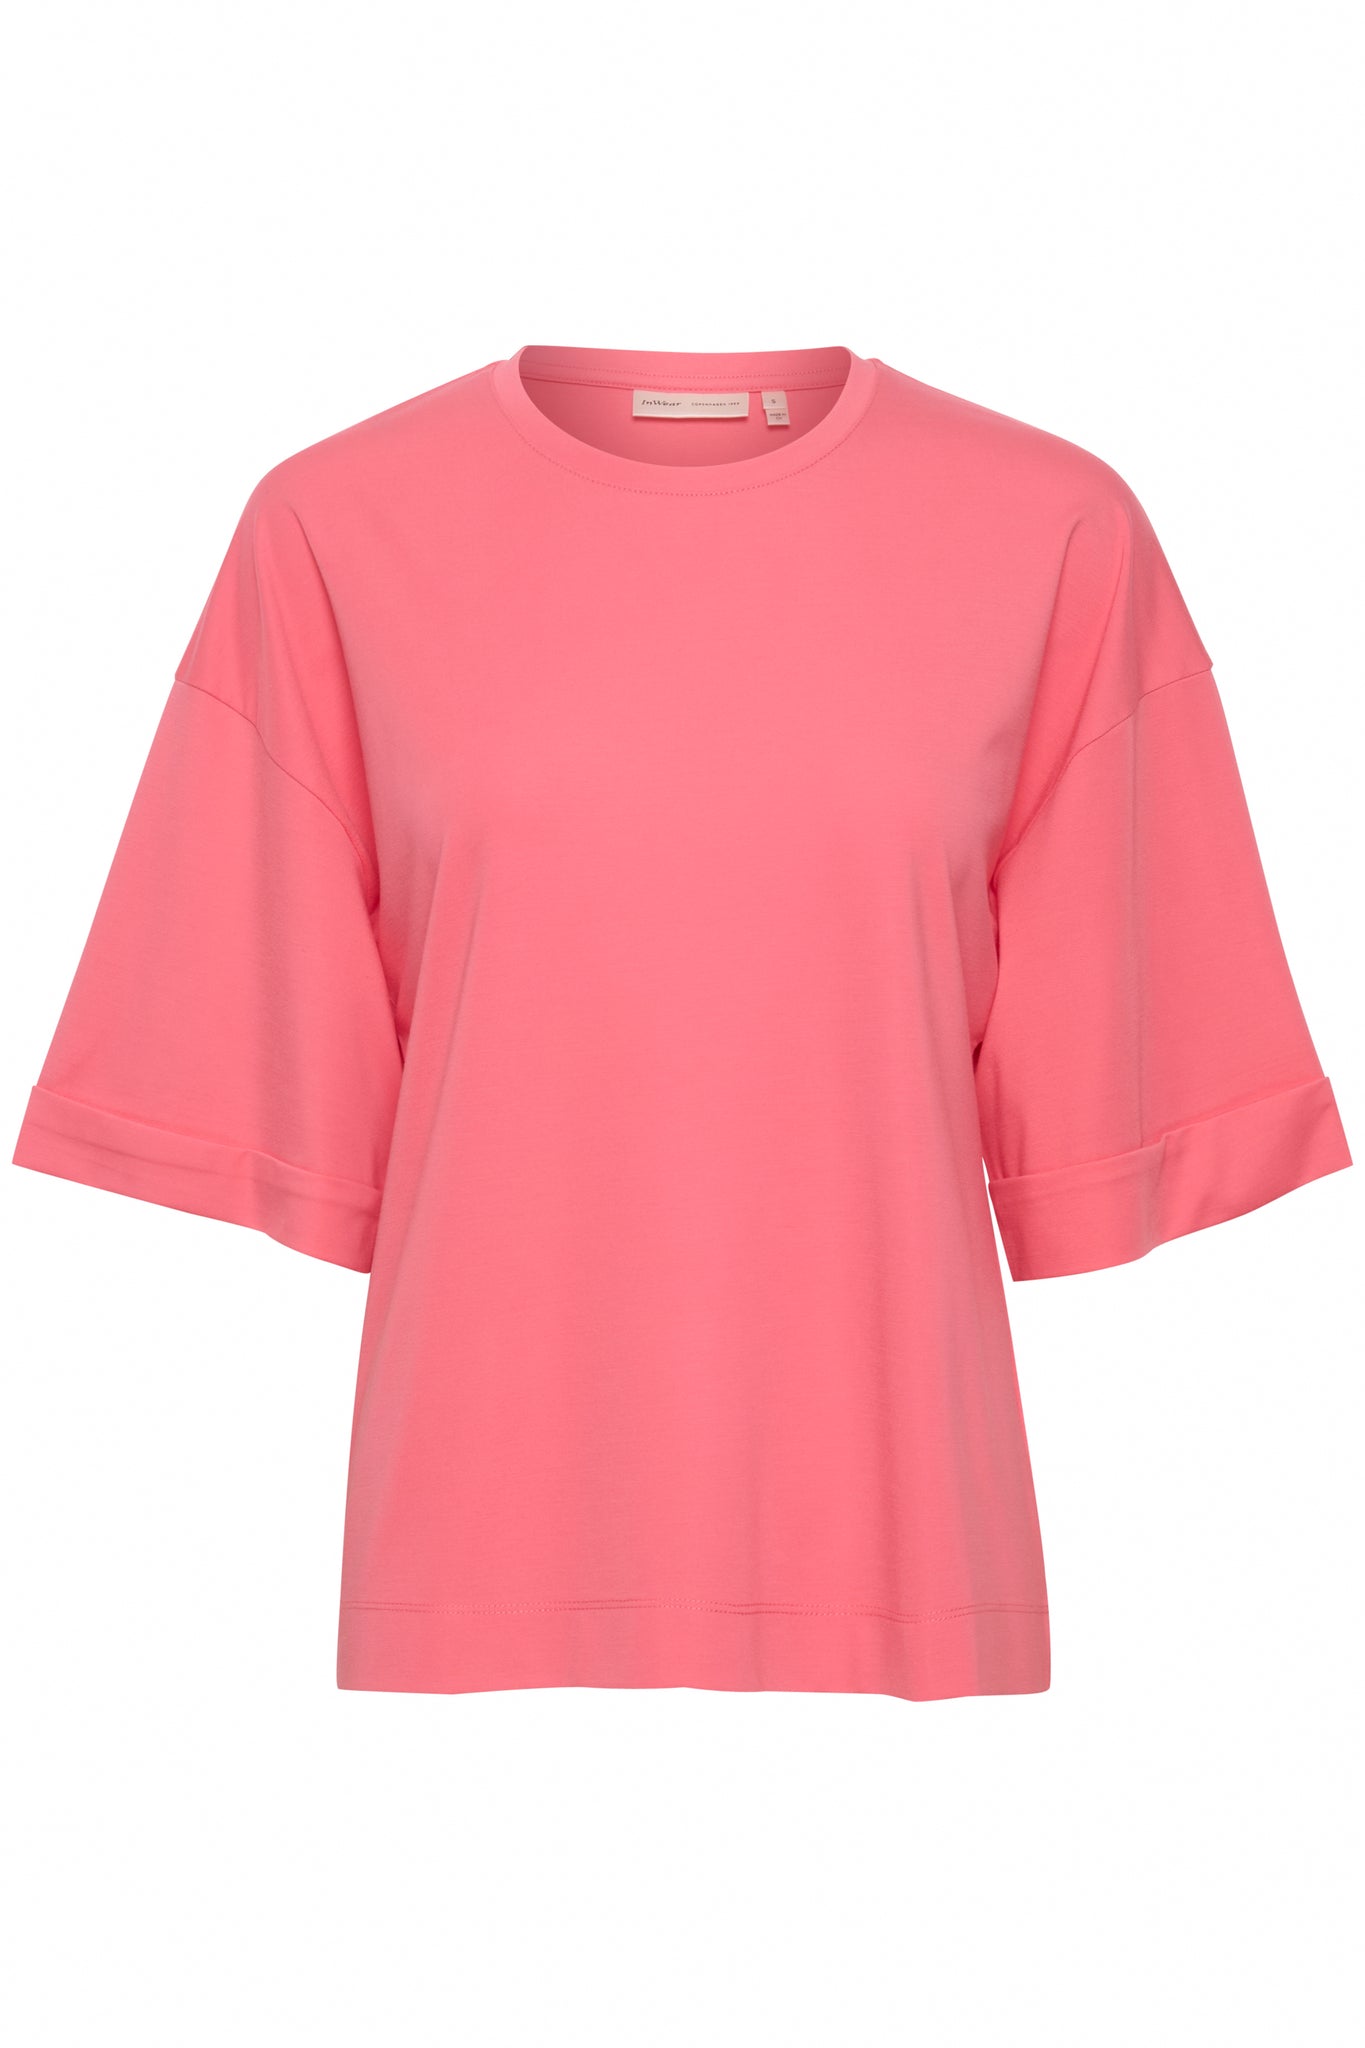 In Wear Vosie, T-shirt, Pink Rose